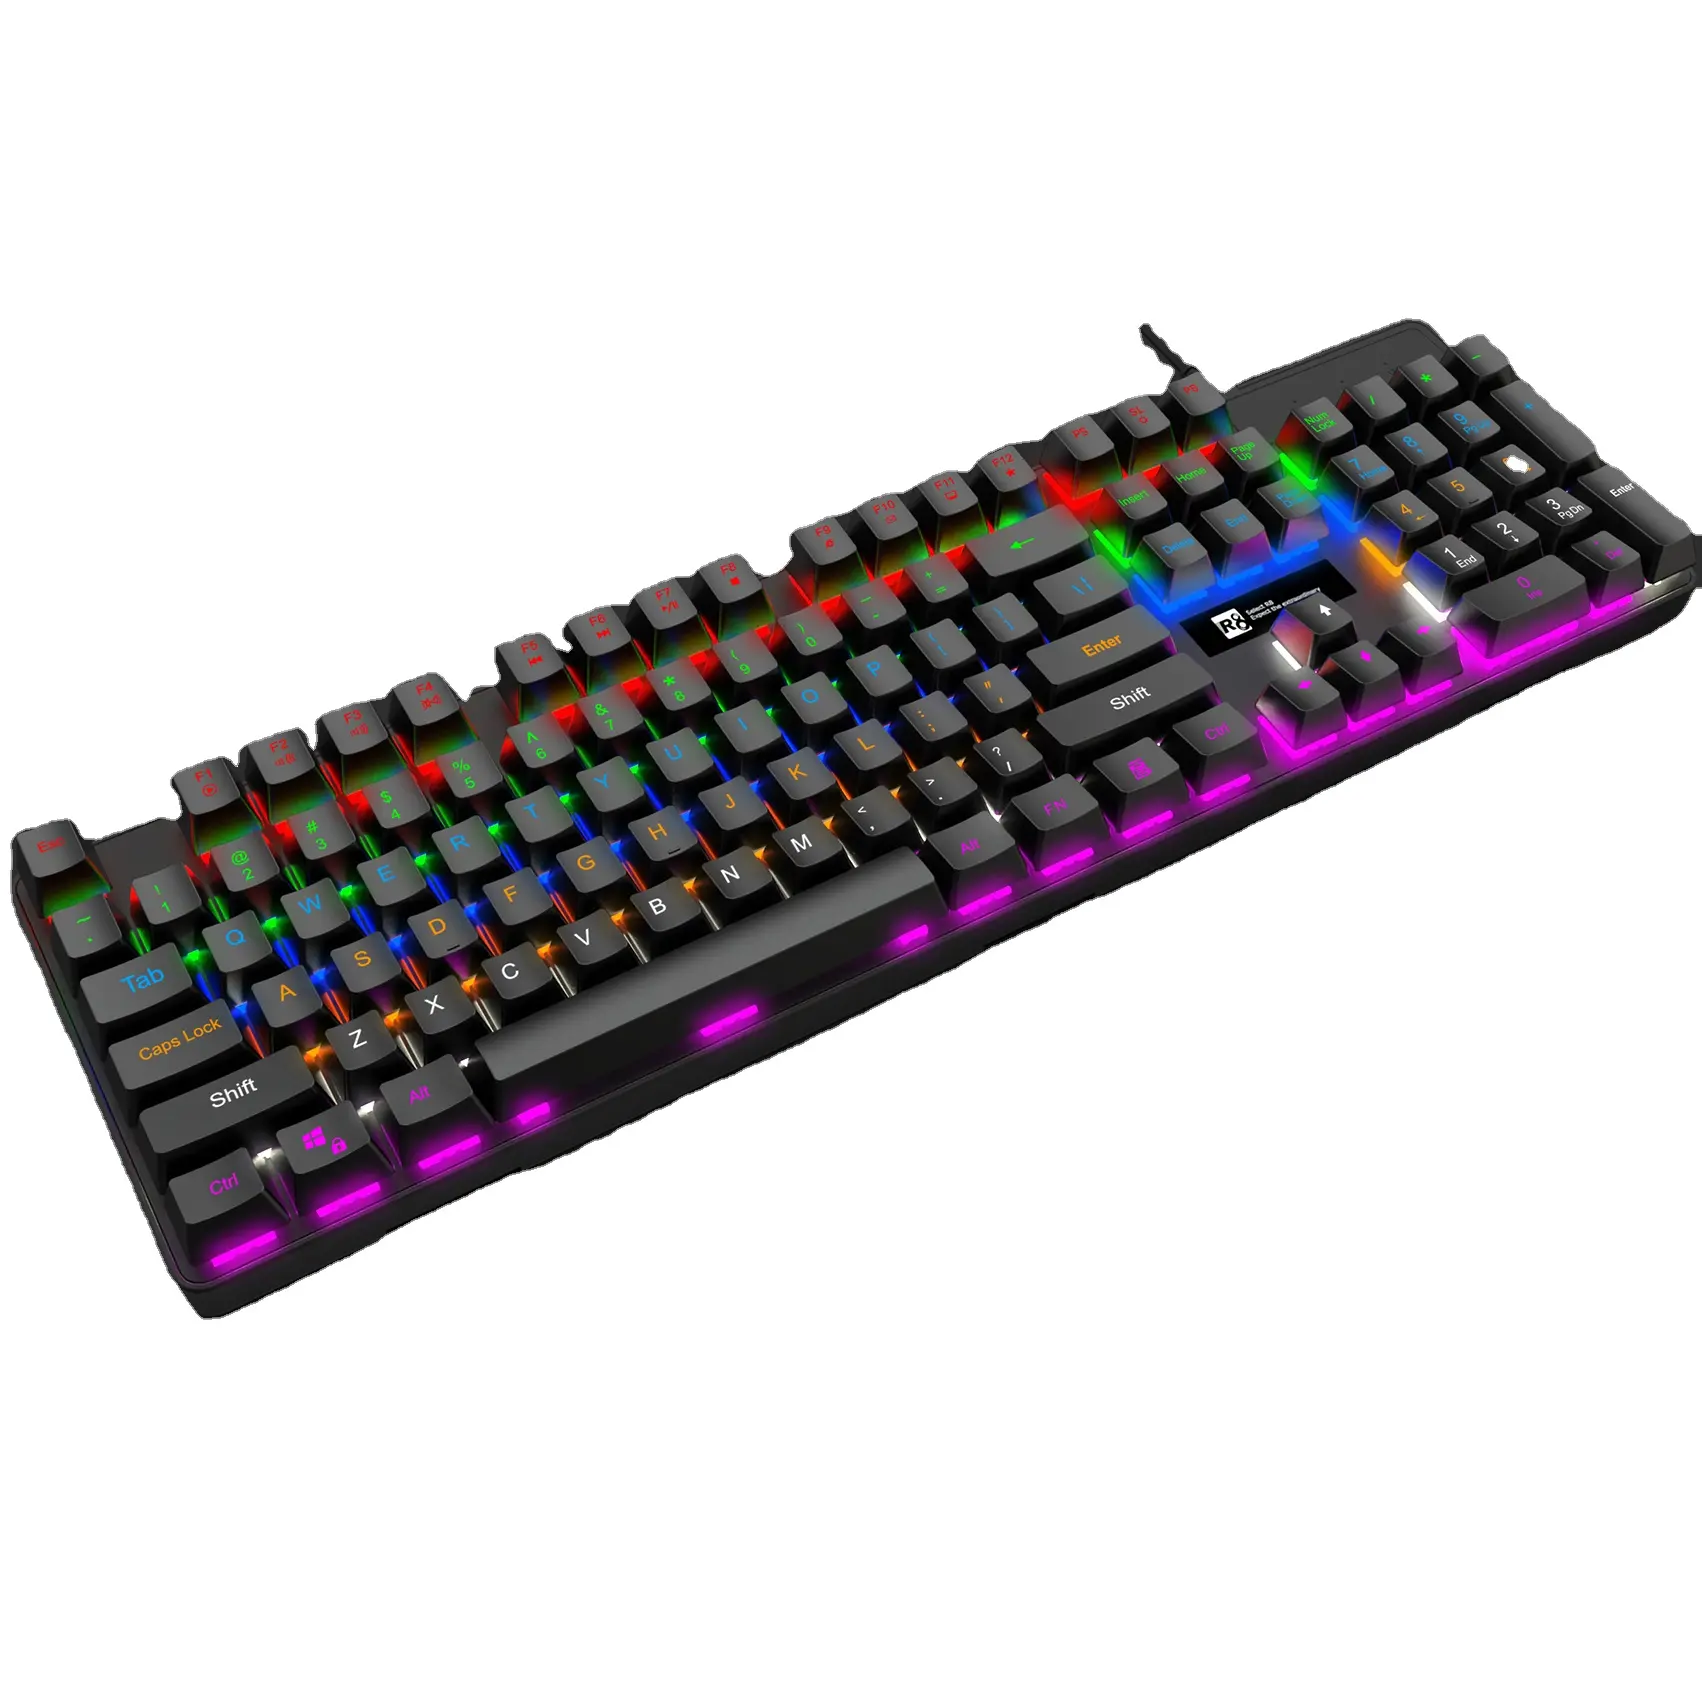 Ergonomia com fio rgb para jogos de computador, teclado colorido arco-íris com luz led